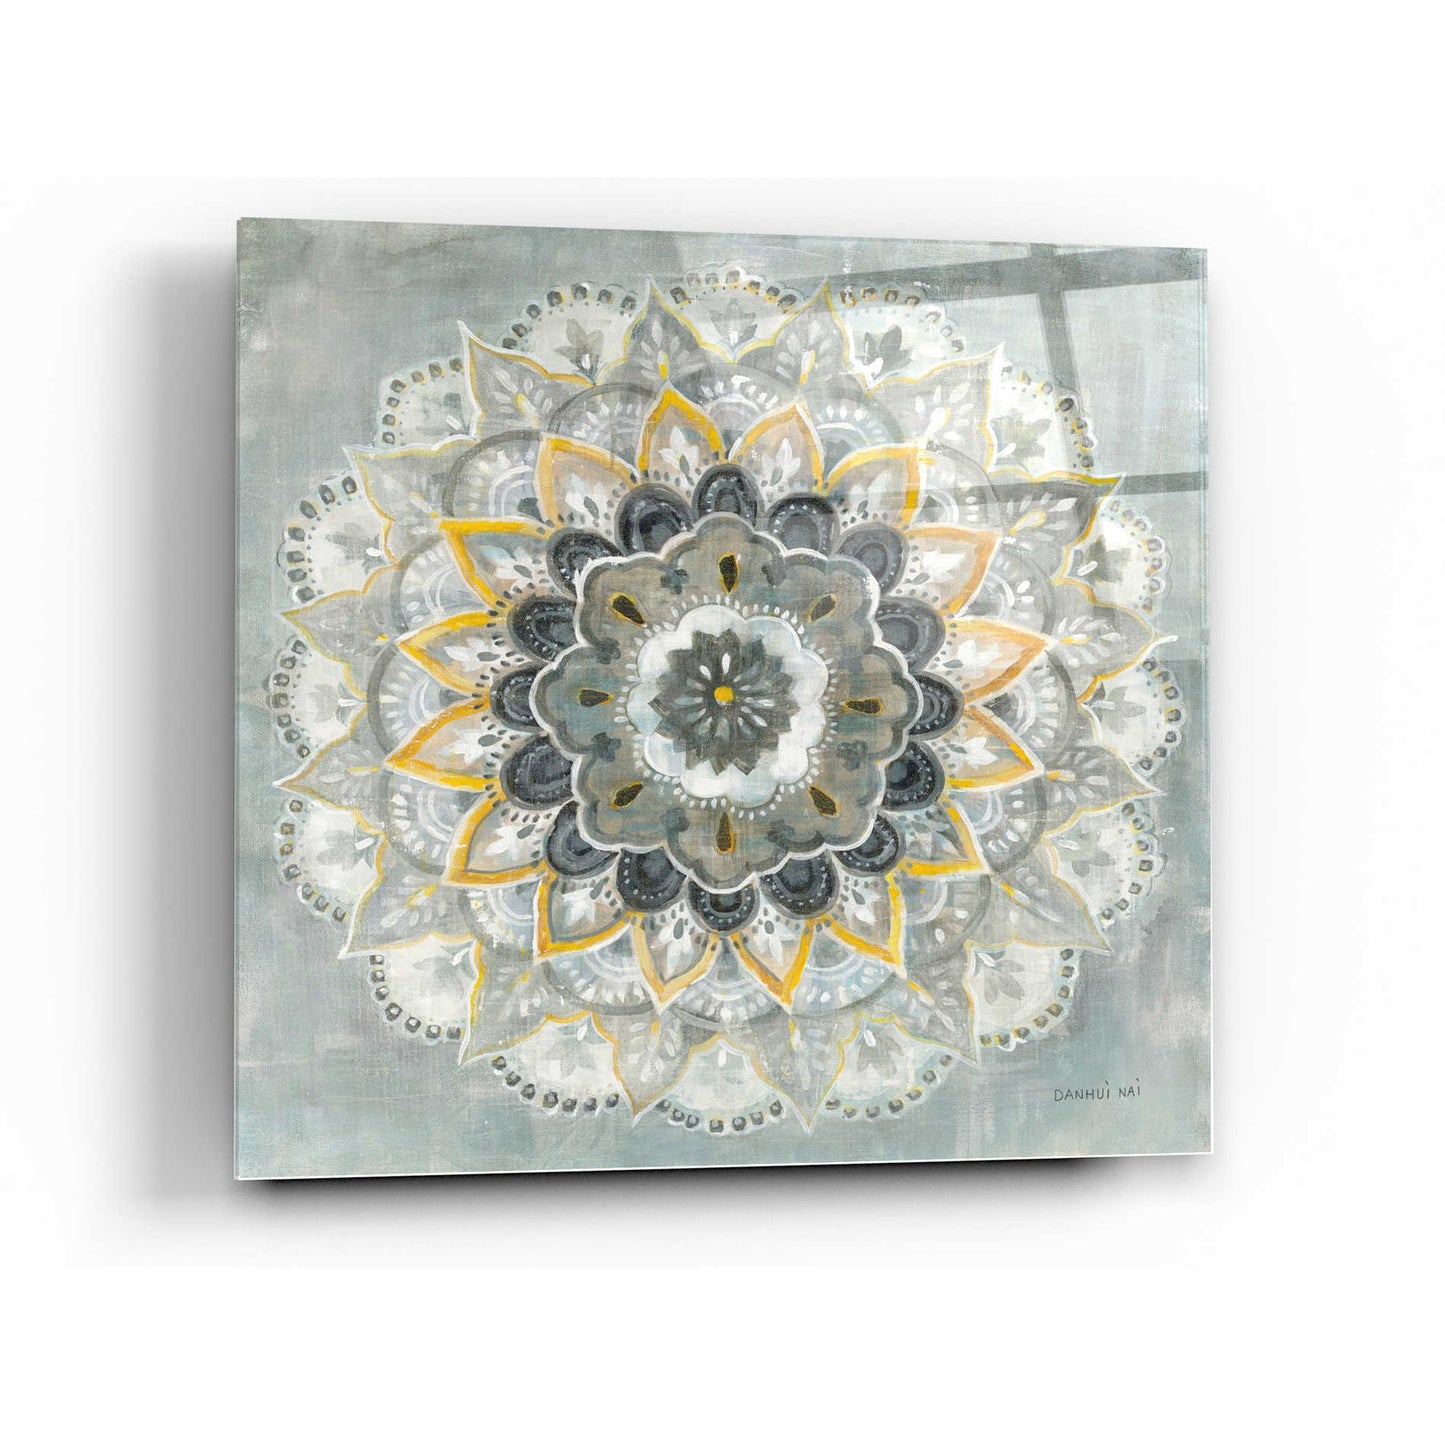 Epic Art 'Sunburst' by Danhui Nai, Acrylic Glass Wall Art,24x24